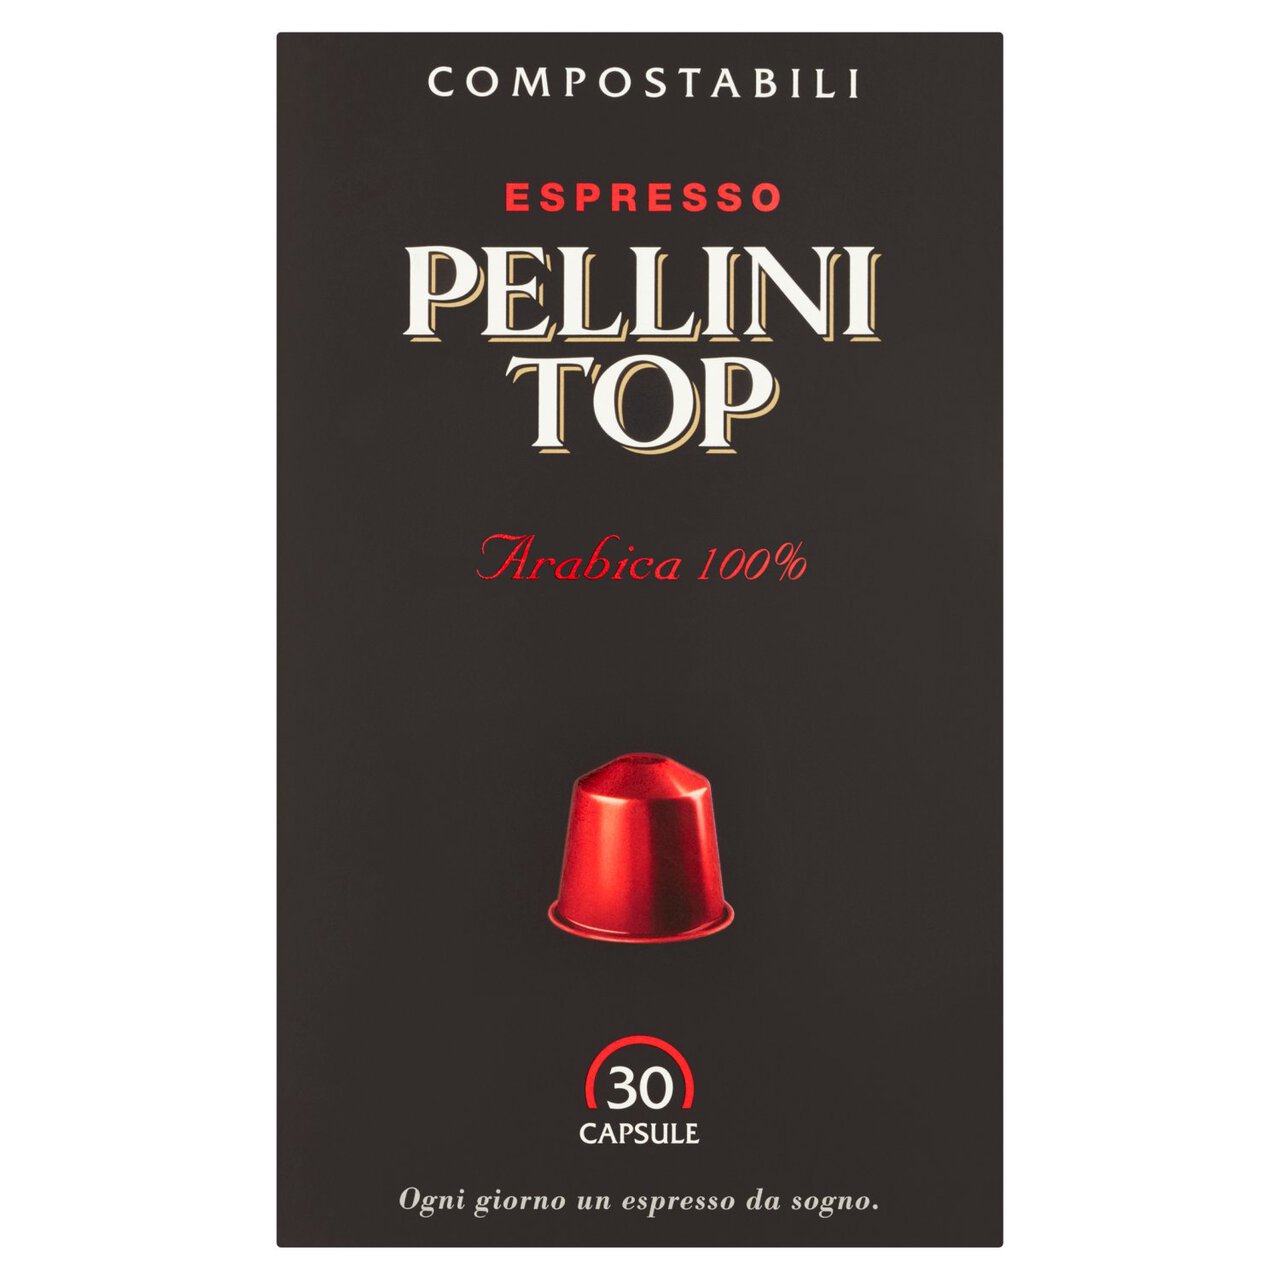 Pellini Top Arabica 100% Compostable Nespresso Compatible Coffee Capsules 30 per pack